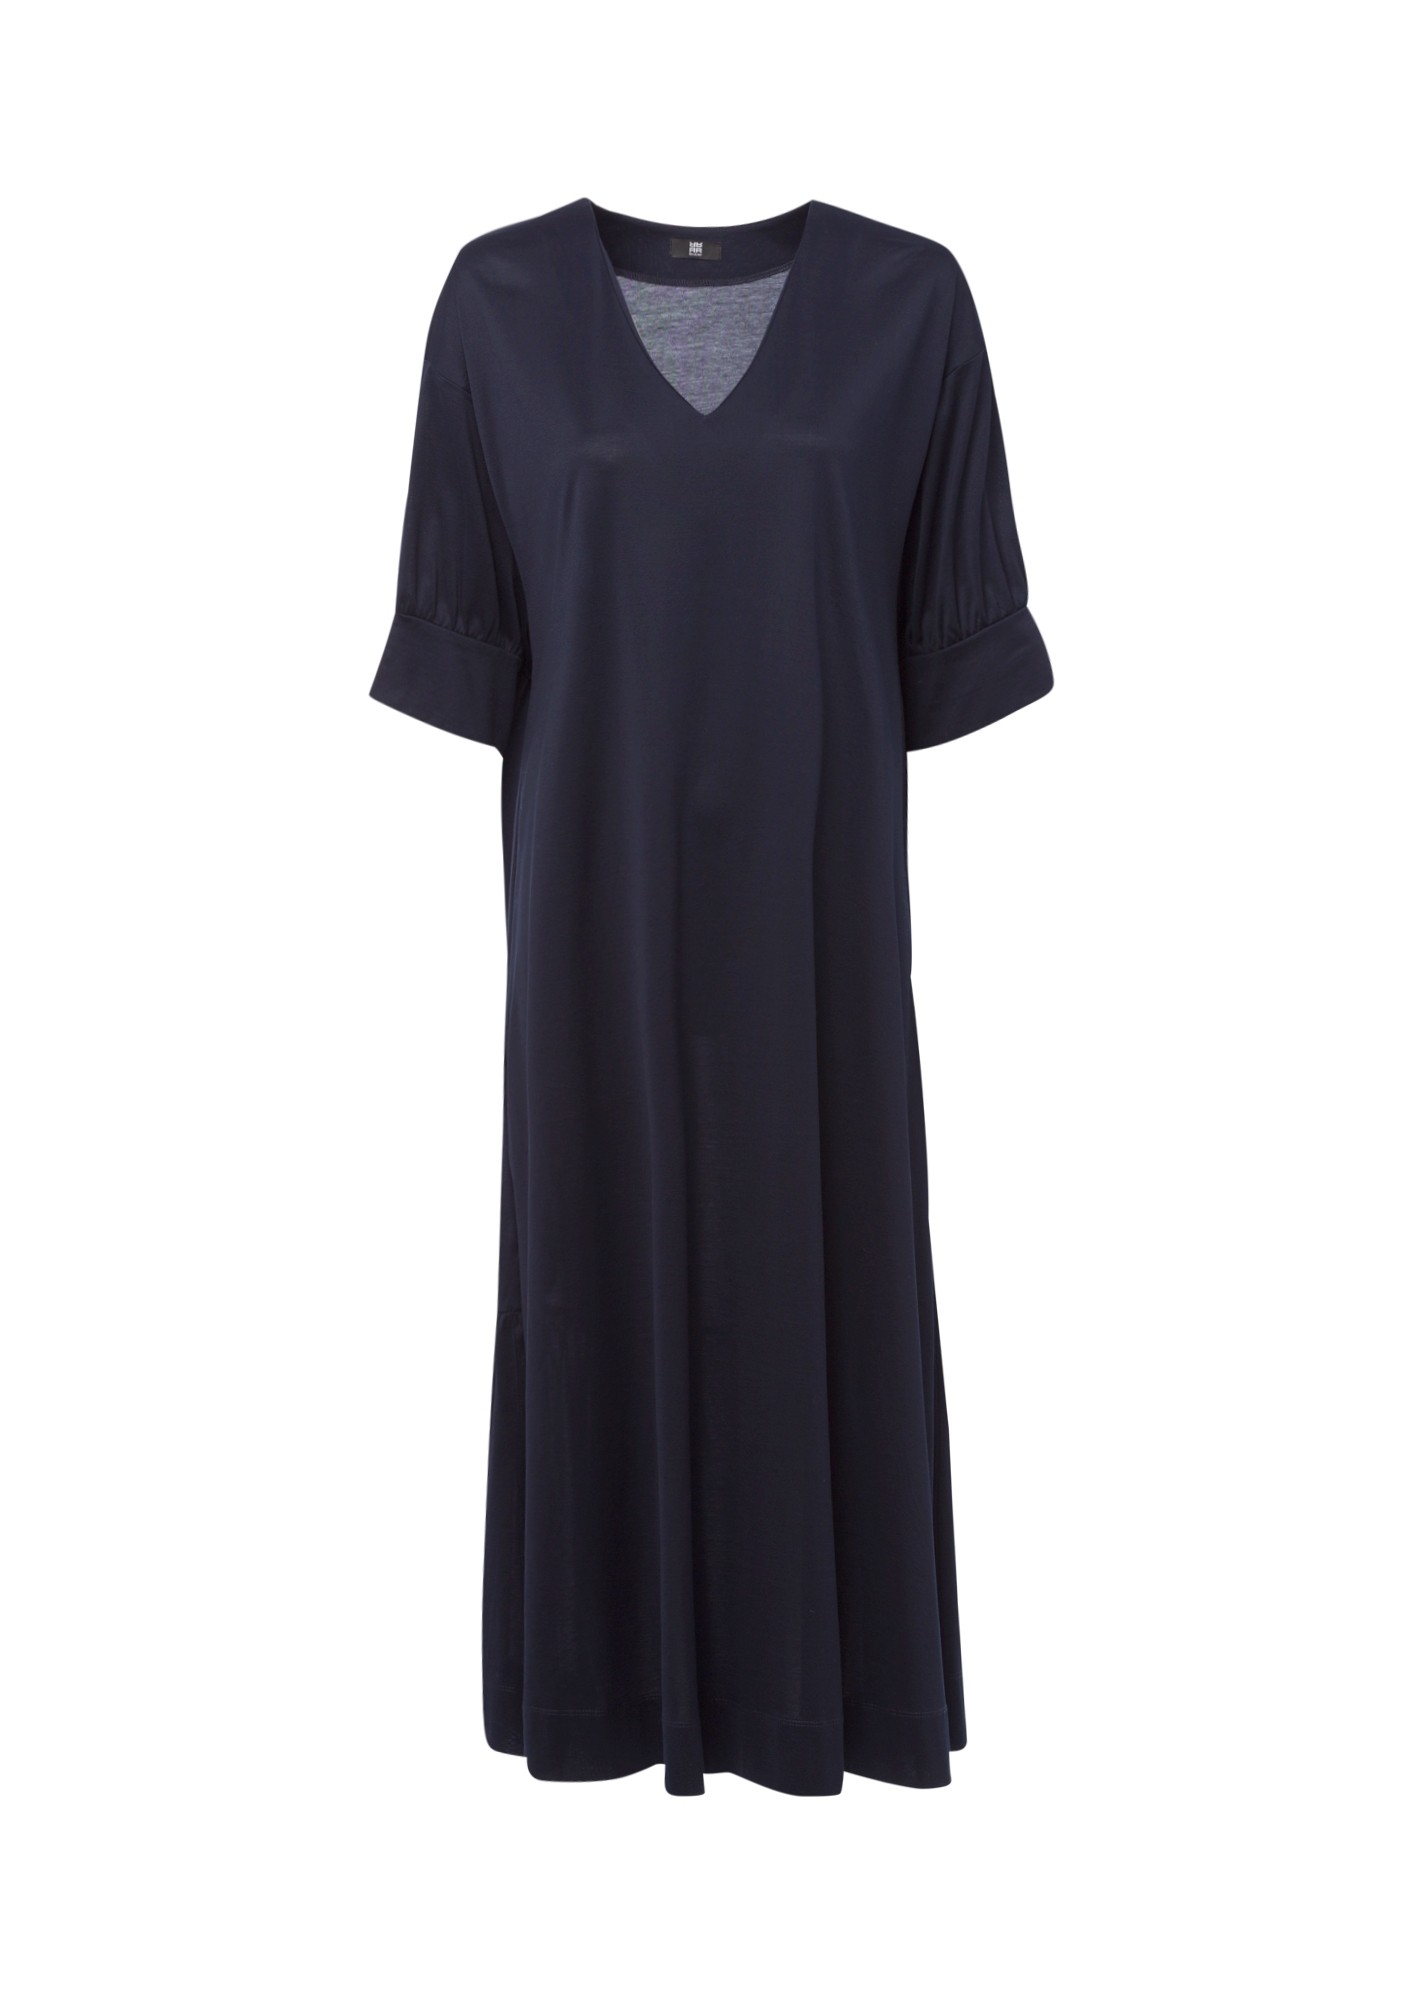 Długa sukienka, krótkie bufiaste rękawy, kolor ciemny granat Riani 136550-8195-421